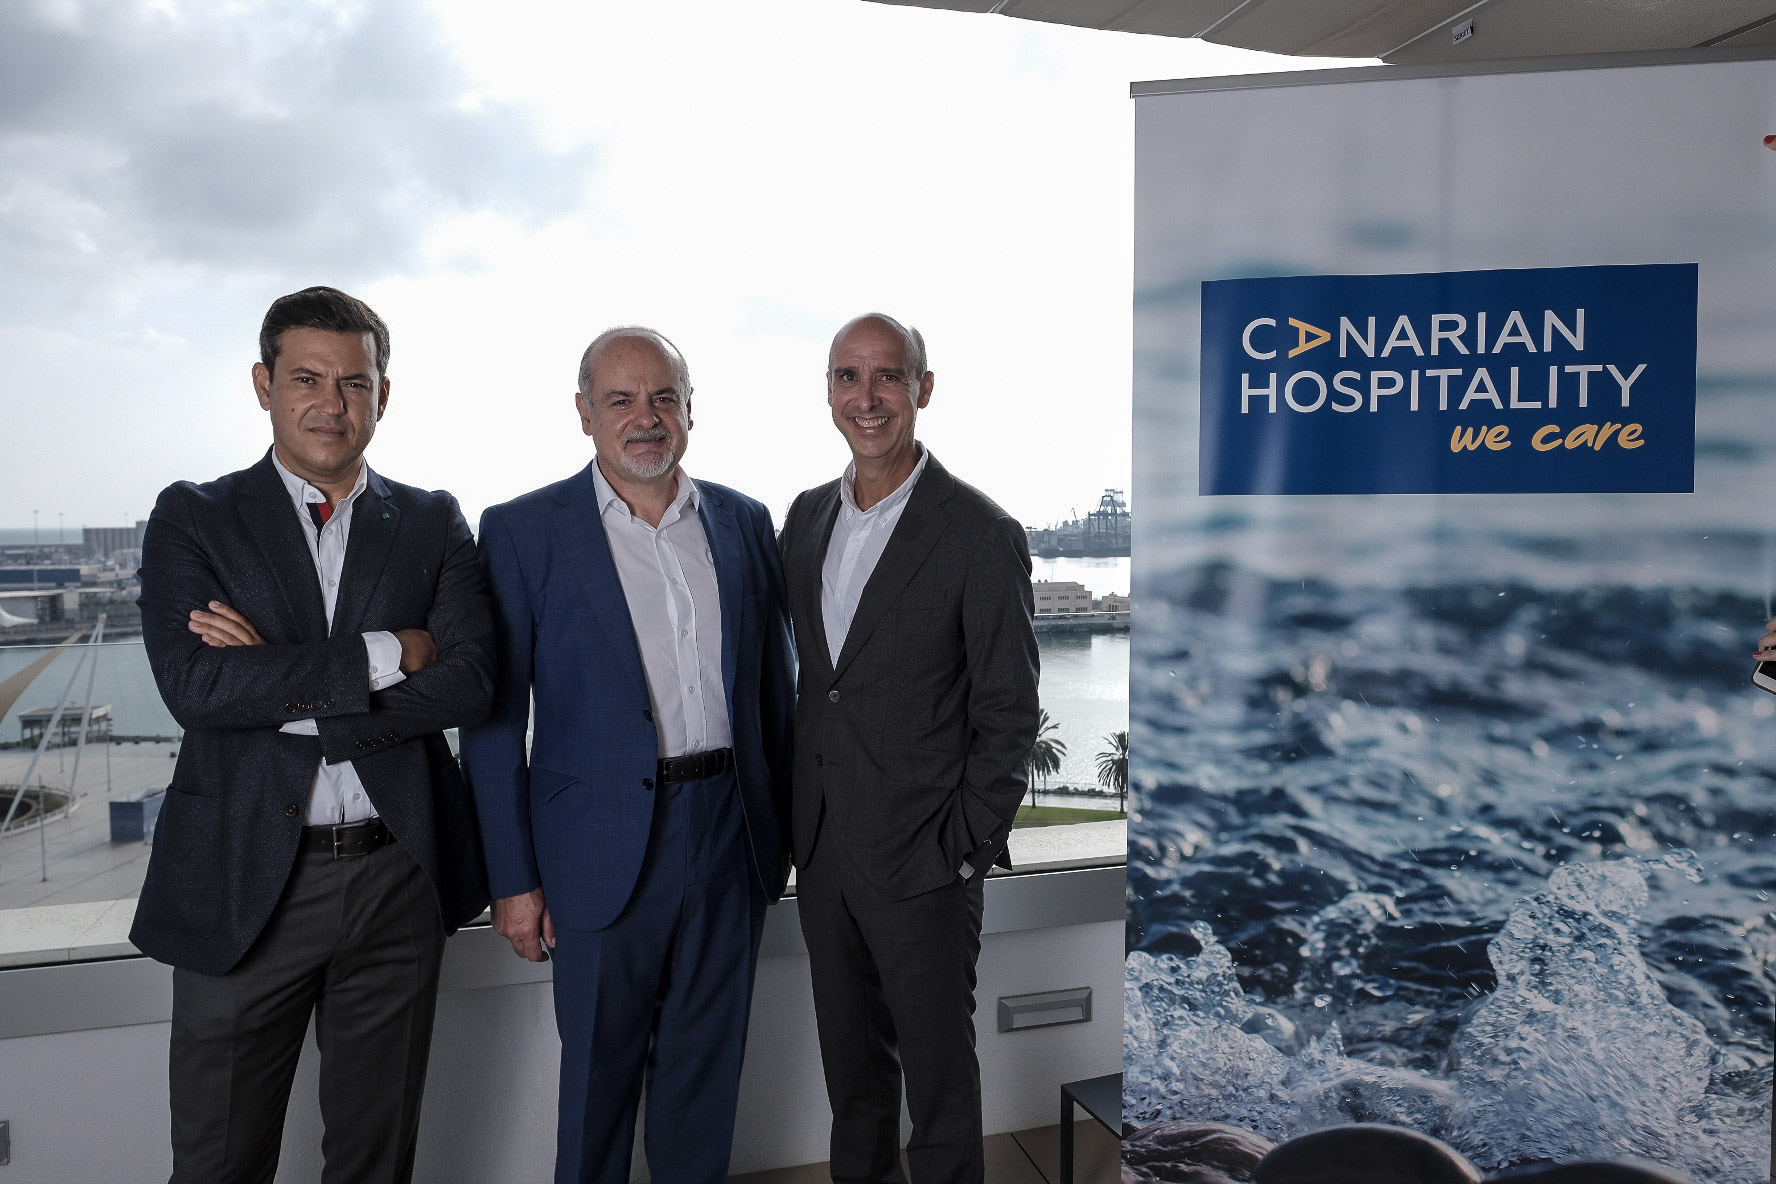 Canarian Hospitality abrirá 12 hoteles en los próximos 5 años en Canarias